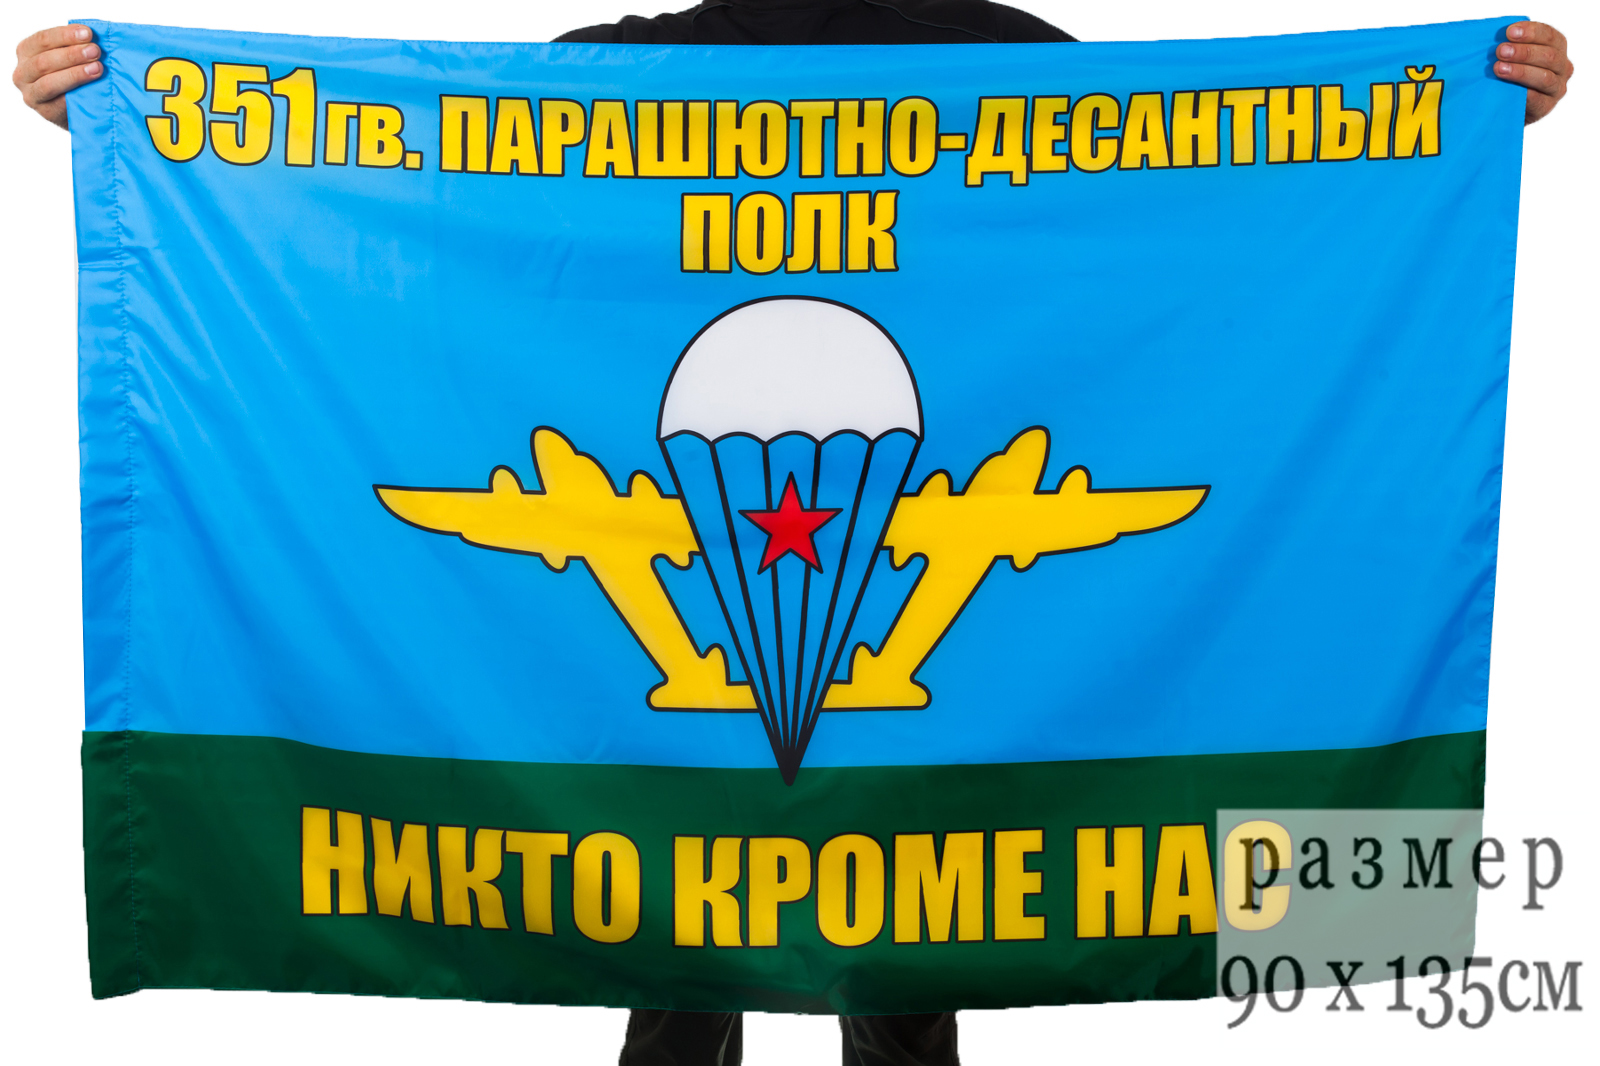 Знамя 351 парашютно-десантного полка